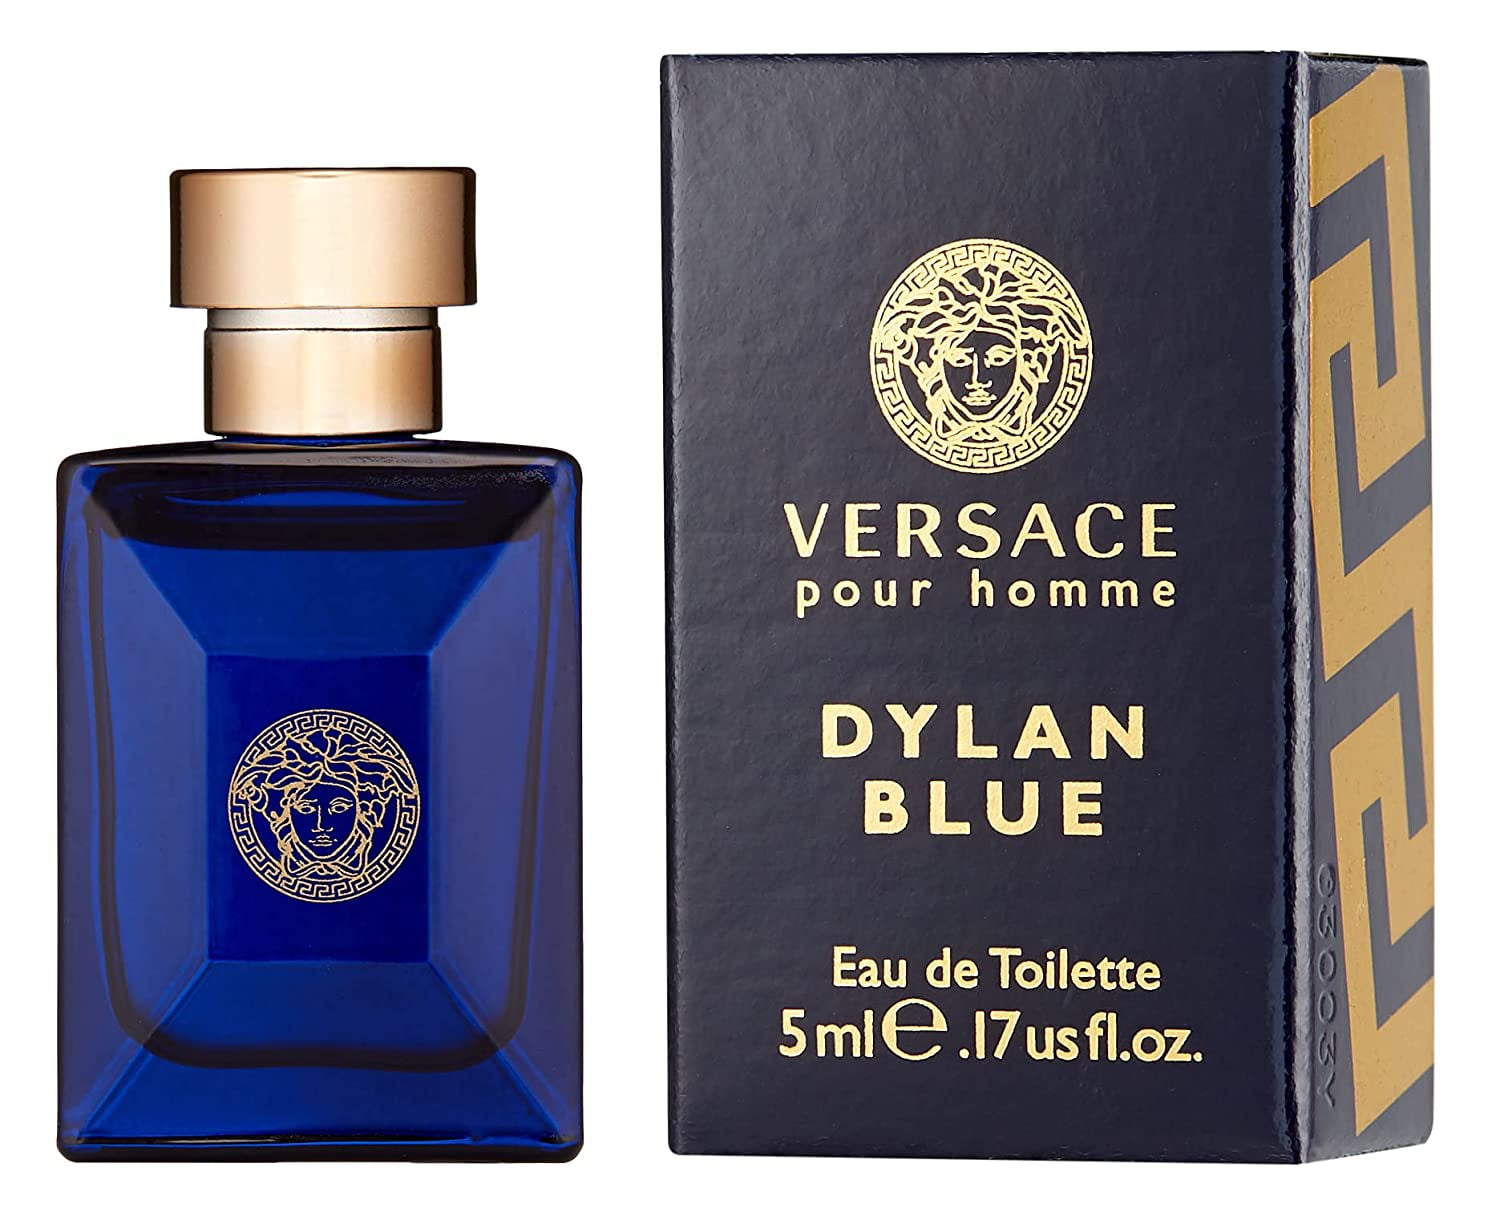 Versace blue мужские. Versace pour homme 5 ml. Духи Версаче Дилан Блю. Versace Dylan Blue 100 ml. Versace pour homme Dylan Blue.